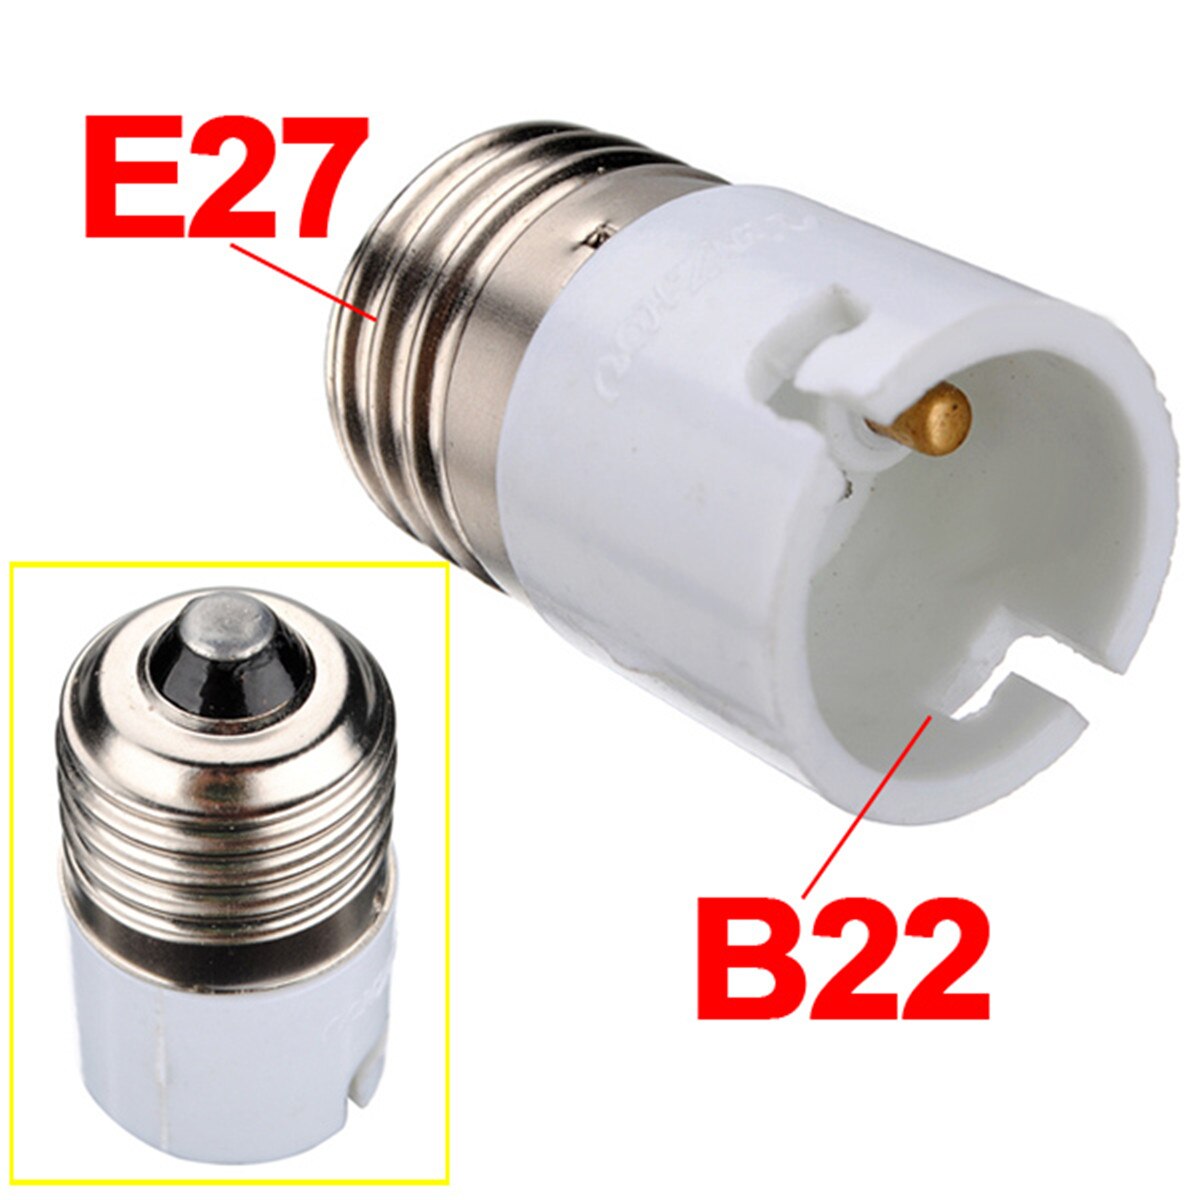 Jiguoor E27 Om B22 Lamp Holder Converters Fitting Light Bulb Lamp Adapter Converter